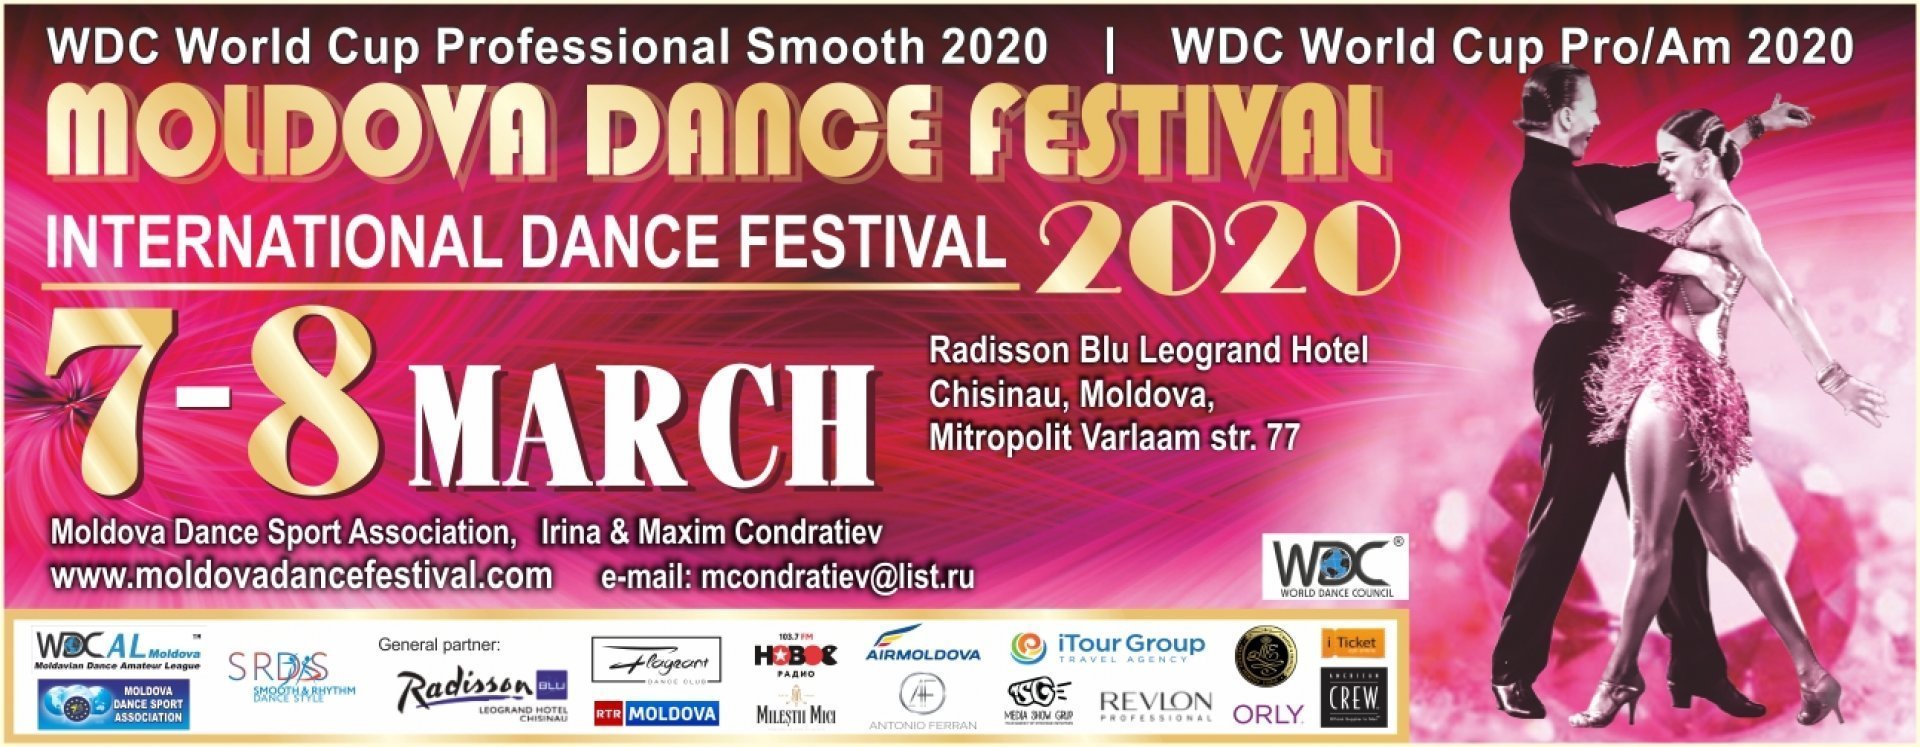 7 Martie |19:00 | Moldova Dance Festival 2020